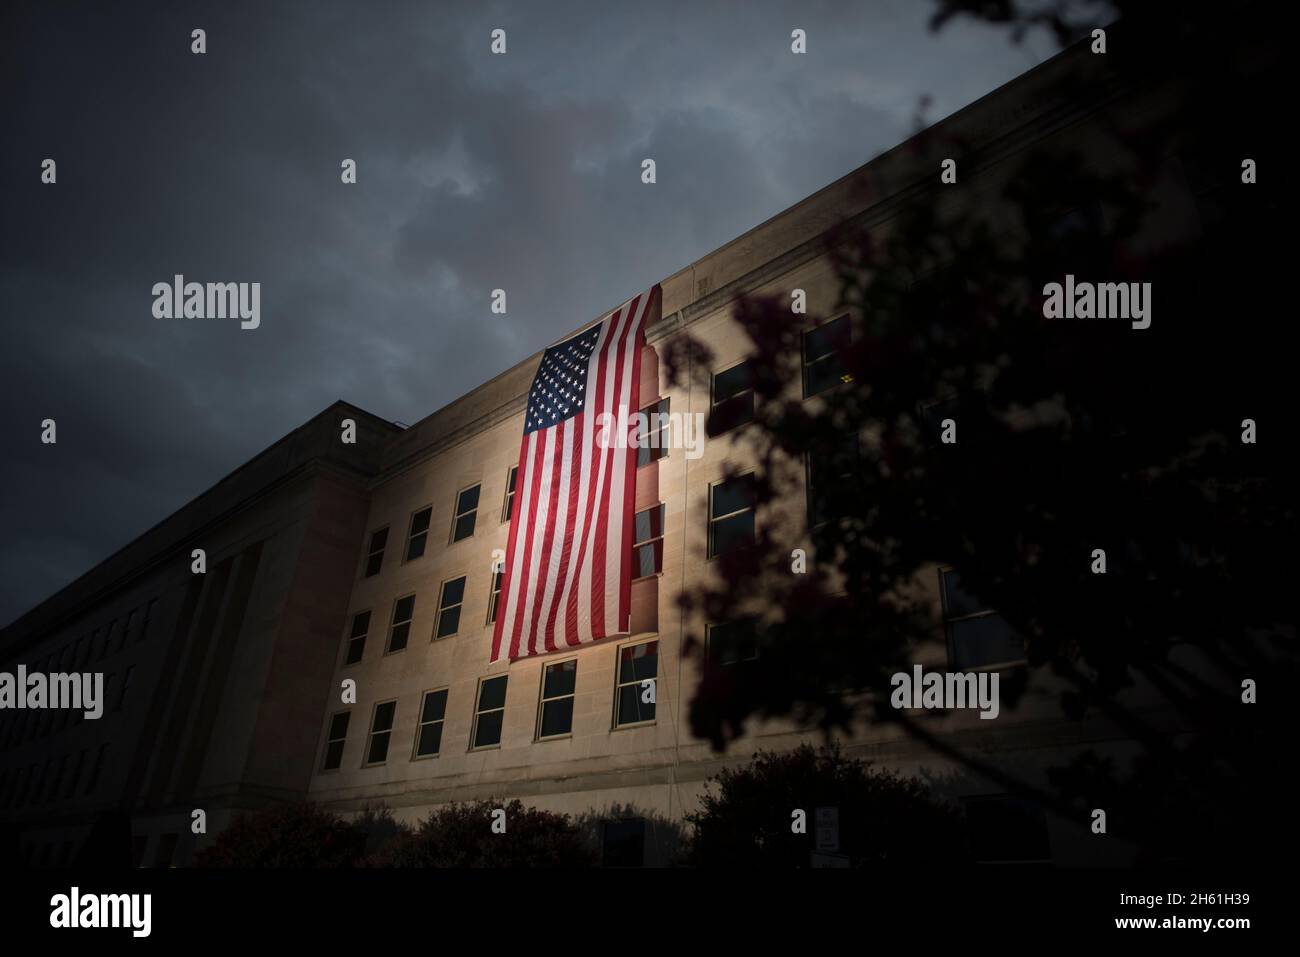 Reportage : un drapeau américain est à l'aube du Pentagone à l'occasion du 19e anniversaire des attentats terroristes du 11 septembre, Washington, D.C., 11 septembre 2020. Banque D'Images